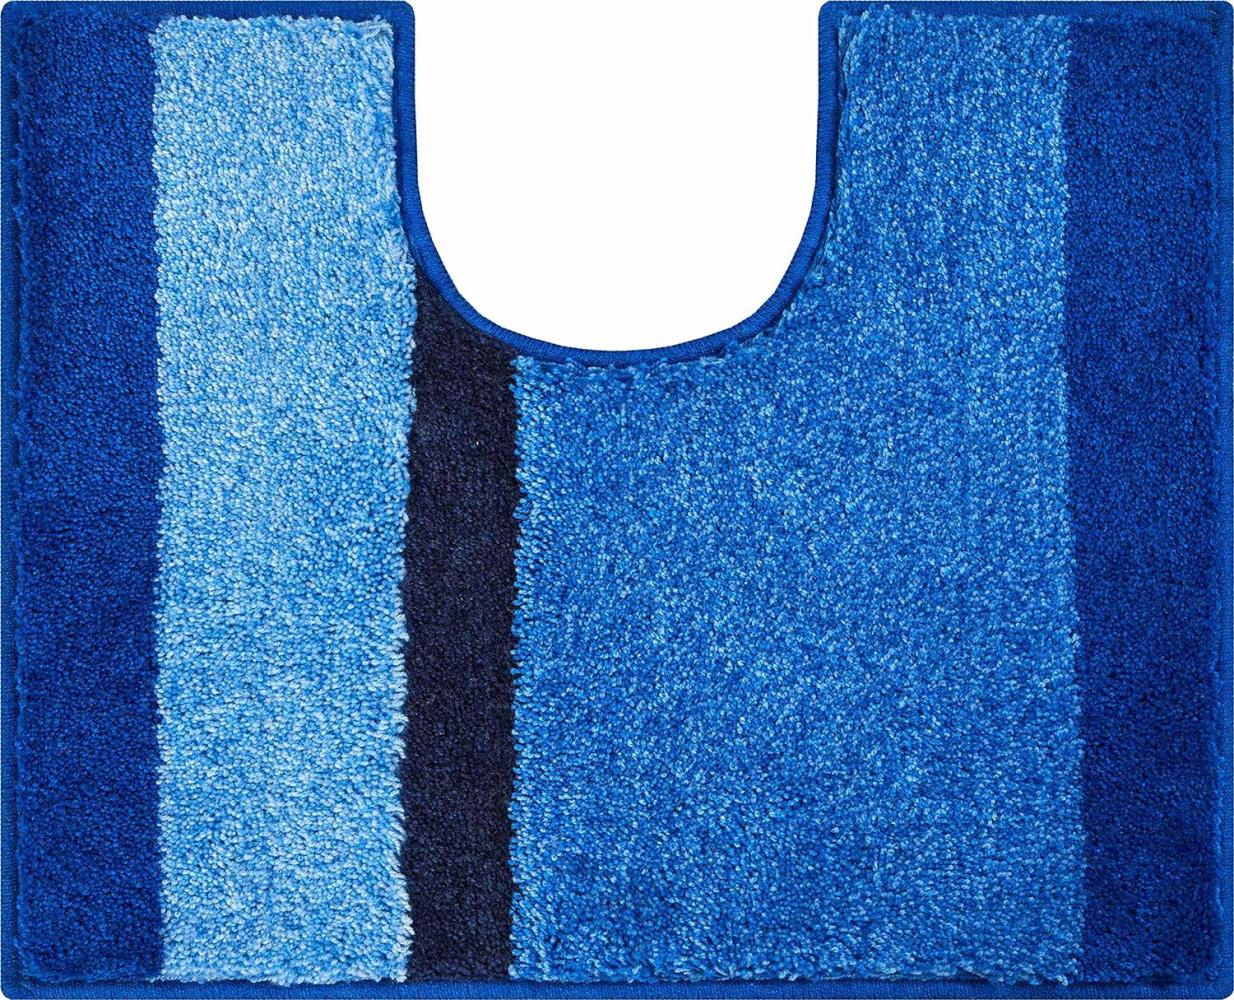 Grund Room Badteppich, 100% Polyacryl, sehr weich, Blau, 50 x 60 cm Bild 1